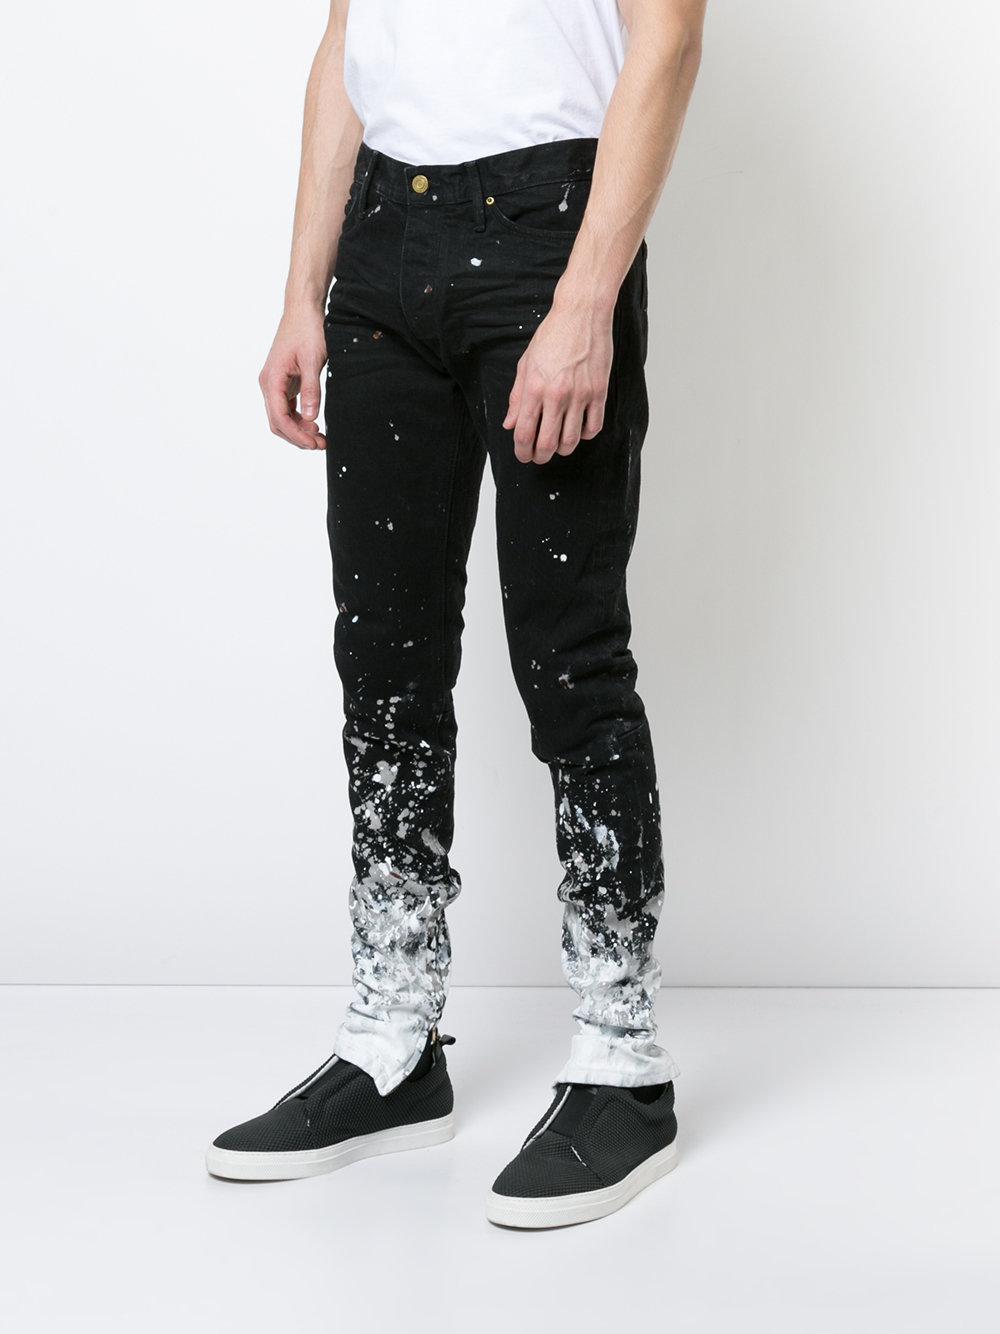 Fear Of God Denim Paint Splash Jeans in Black for Men - Lyst